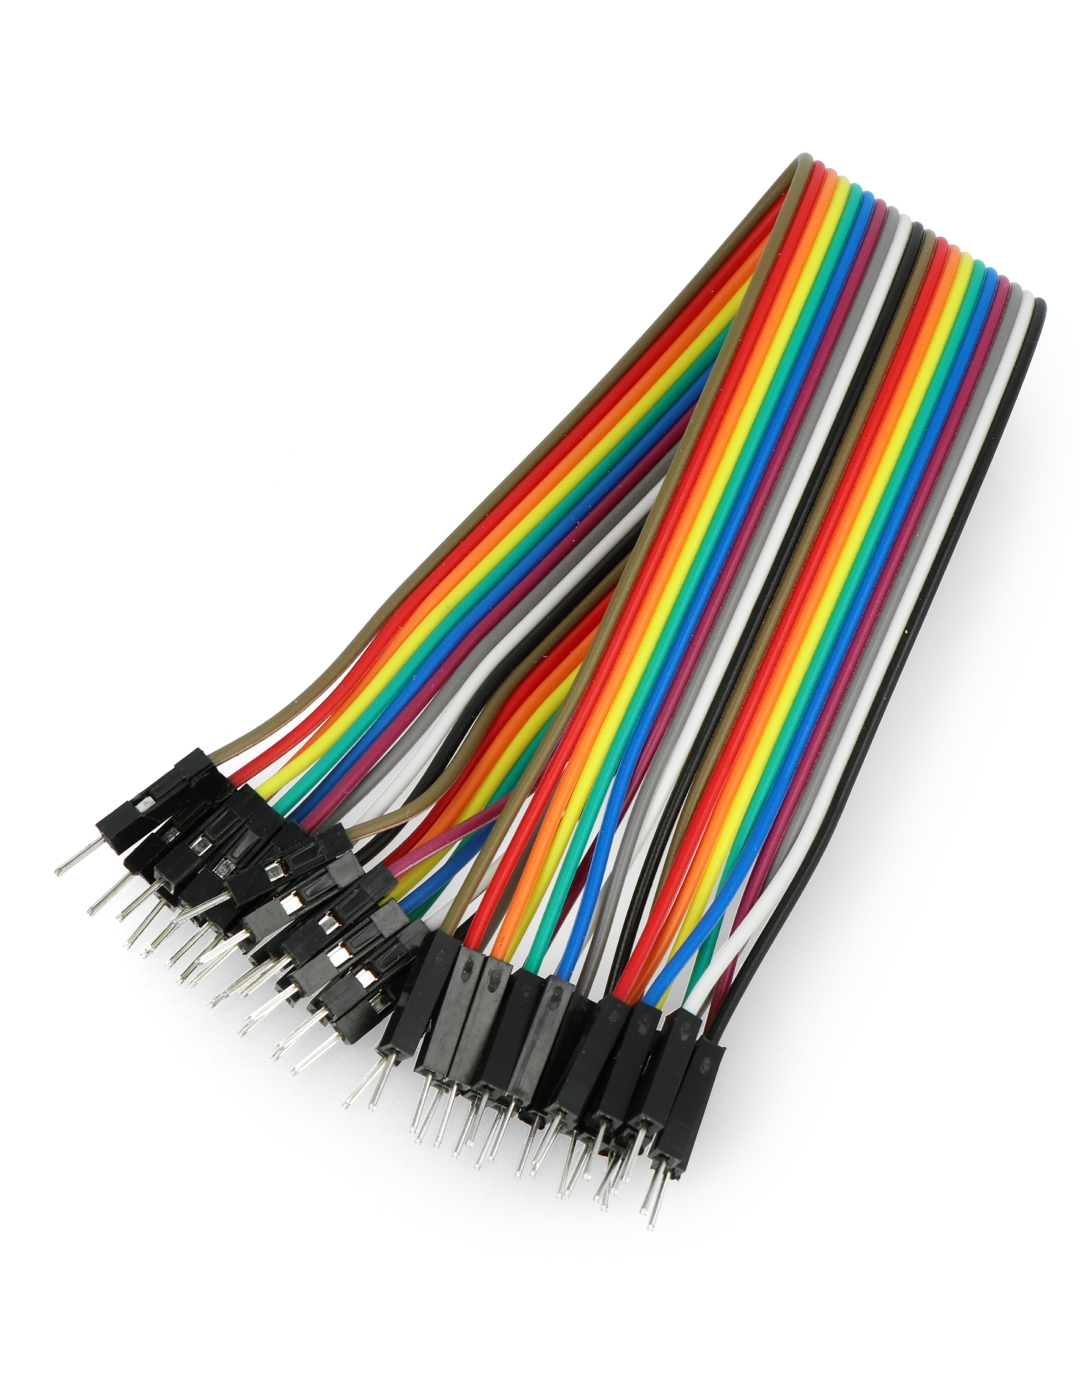  (560 Pcs) MCIGICM Breadboard Jumper Wire Cables for